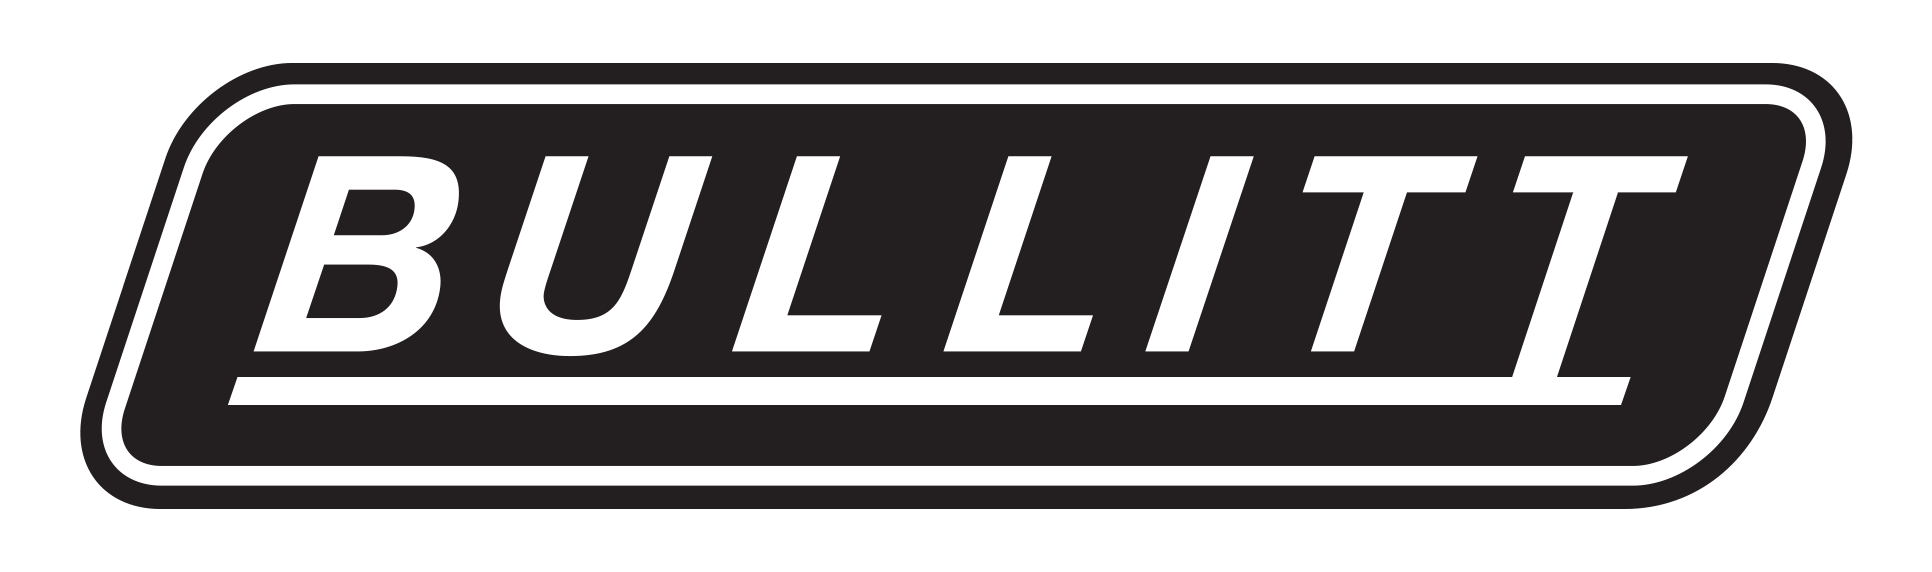 bullitt-sponsor